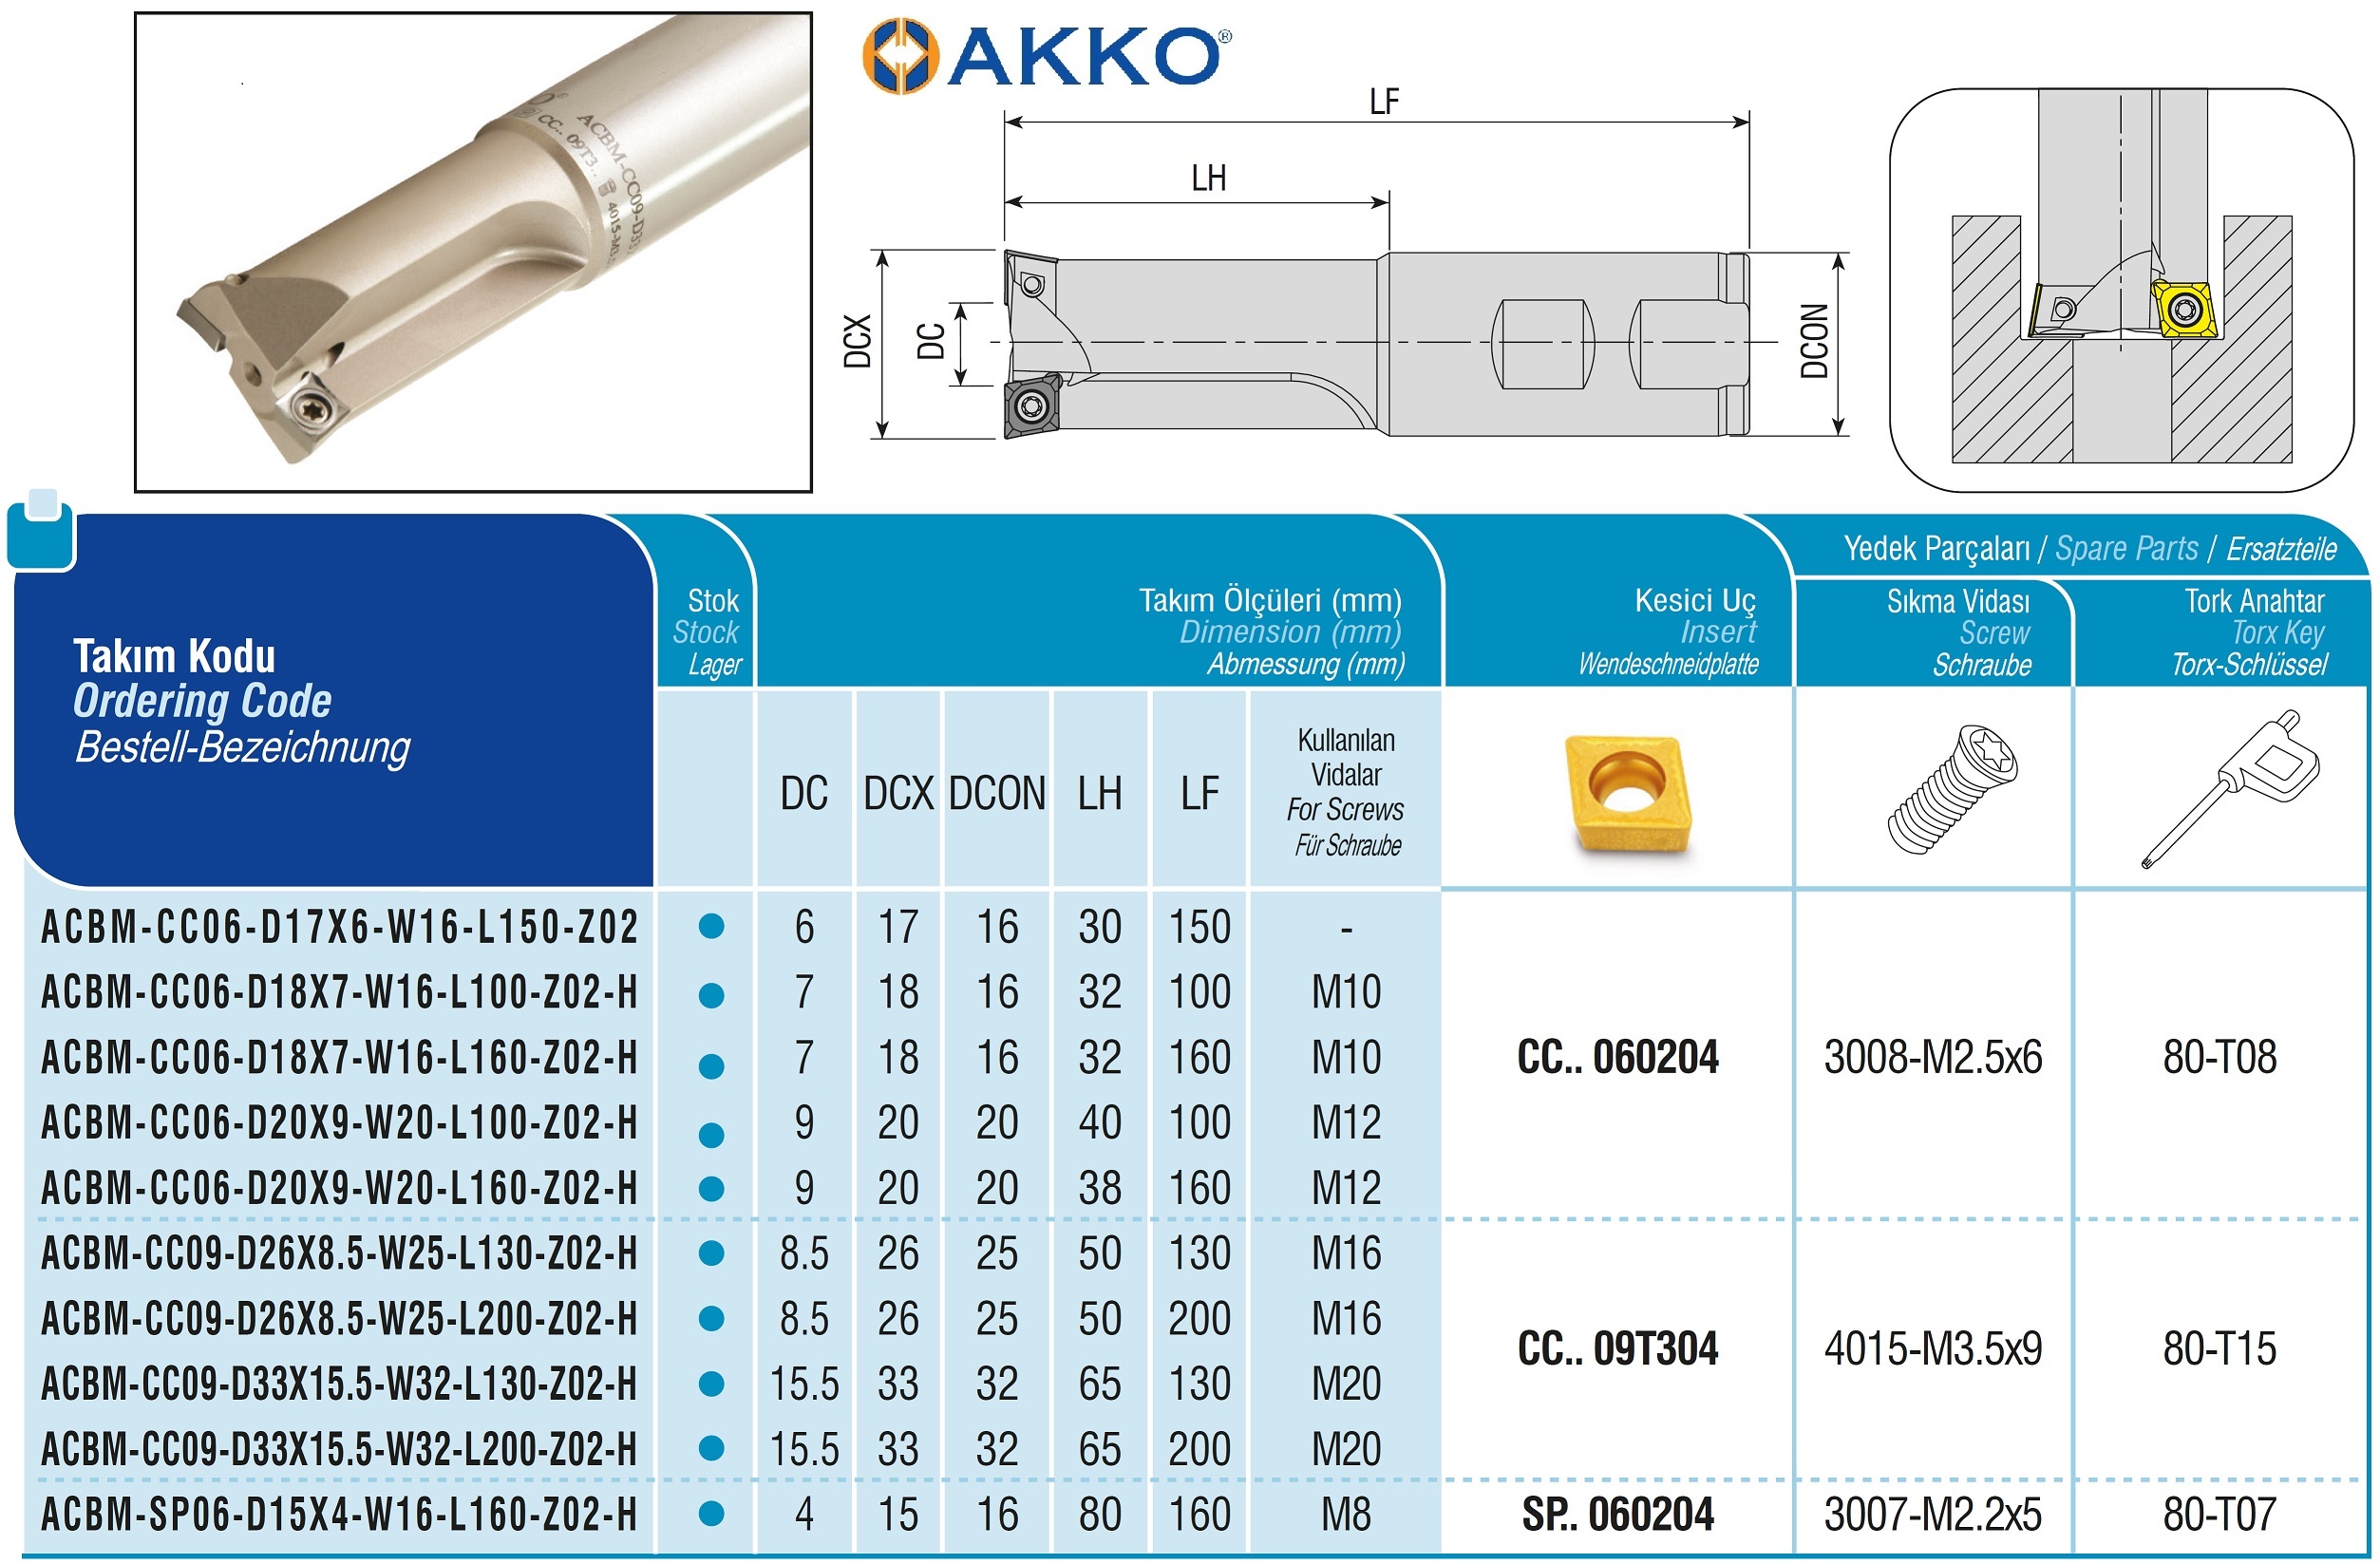 AKKO-Senkfräser für M16, kompatibel mit ISO CC.. 09T304
ø 26 mm, Z=2, mit Innenkühlung